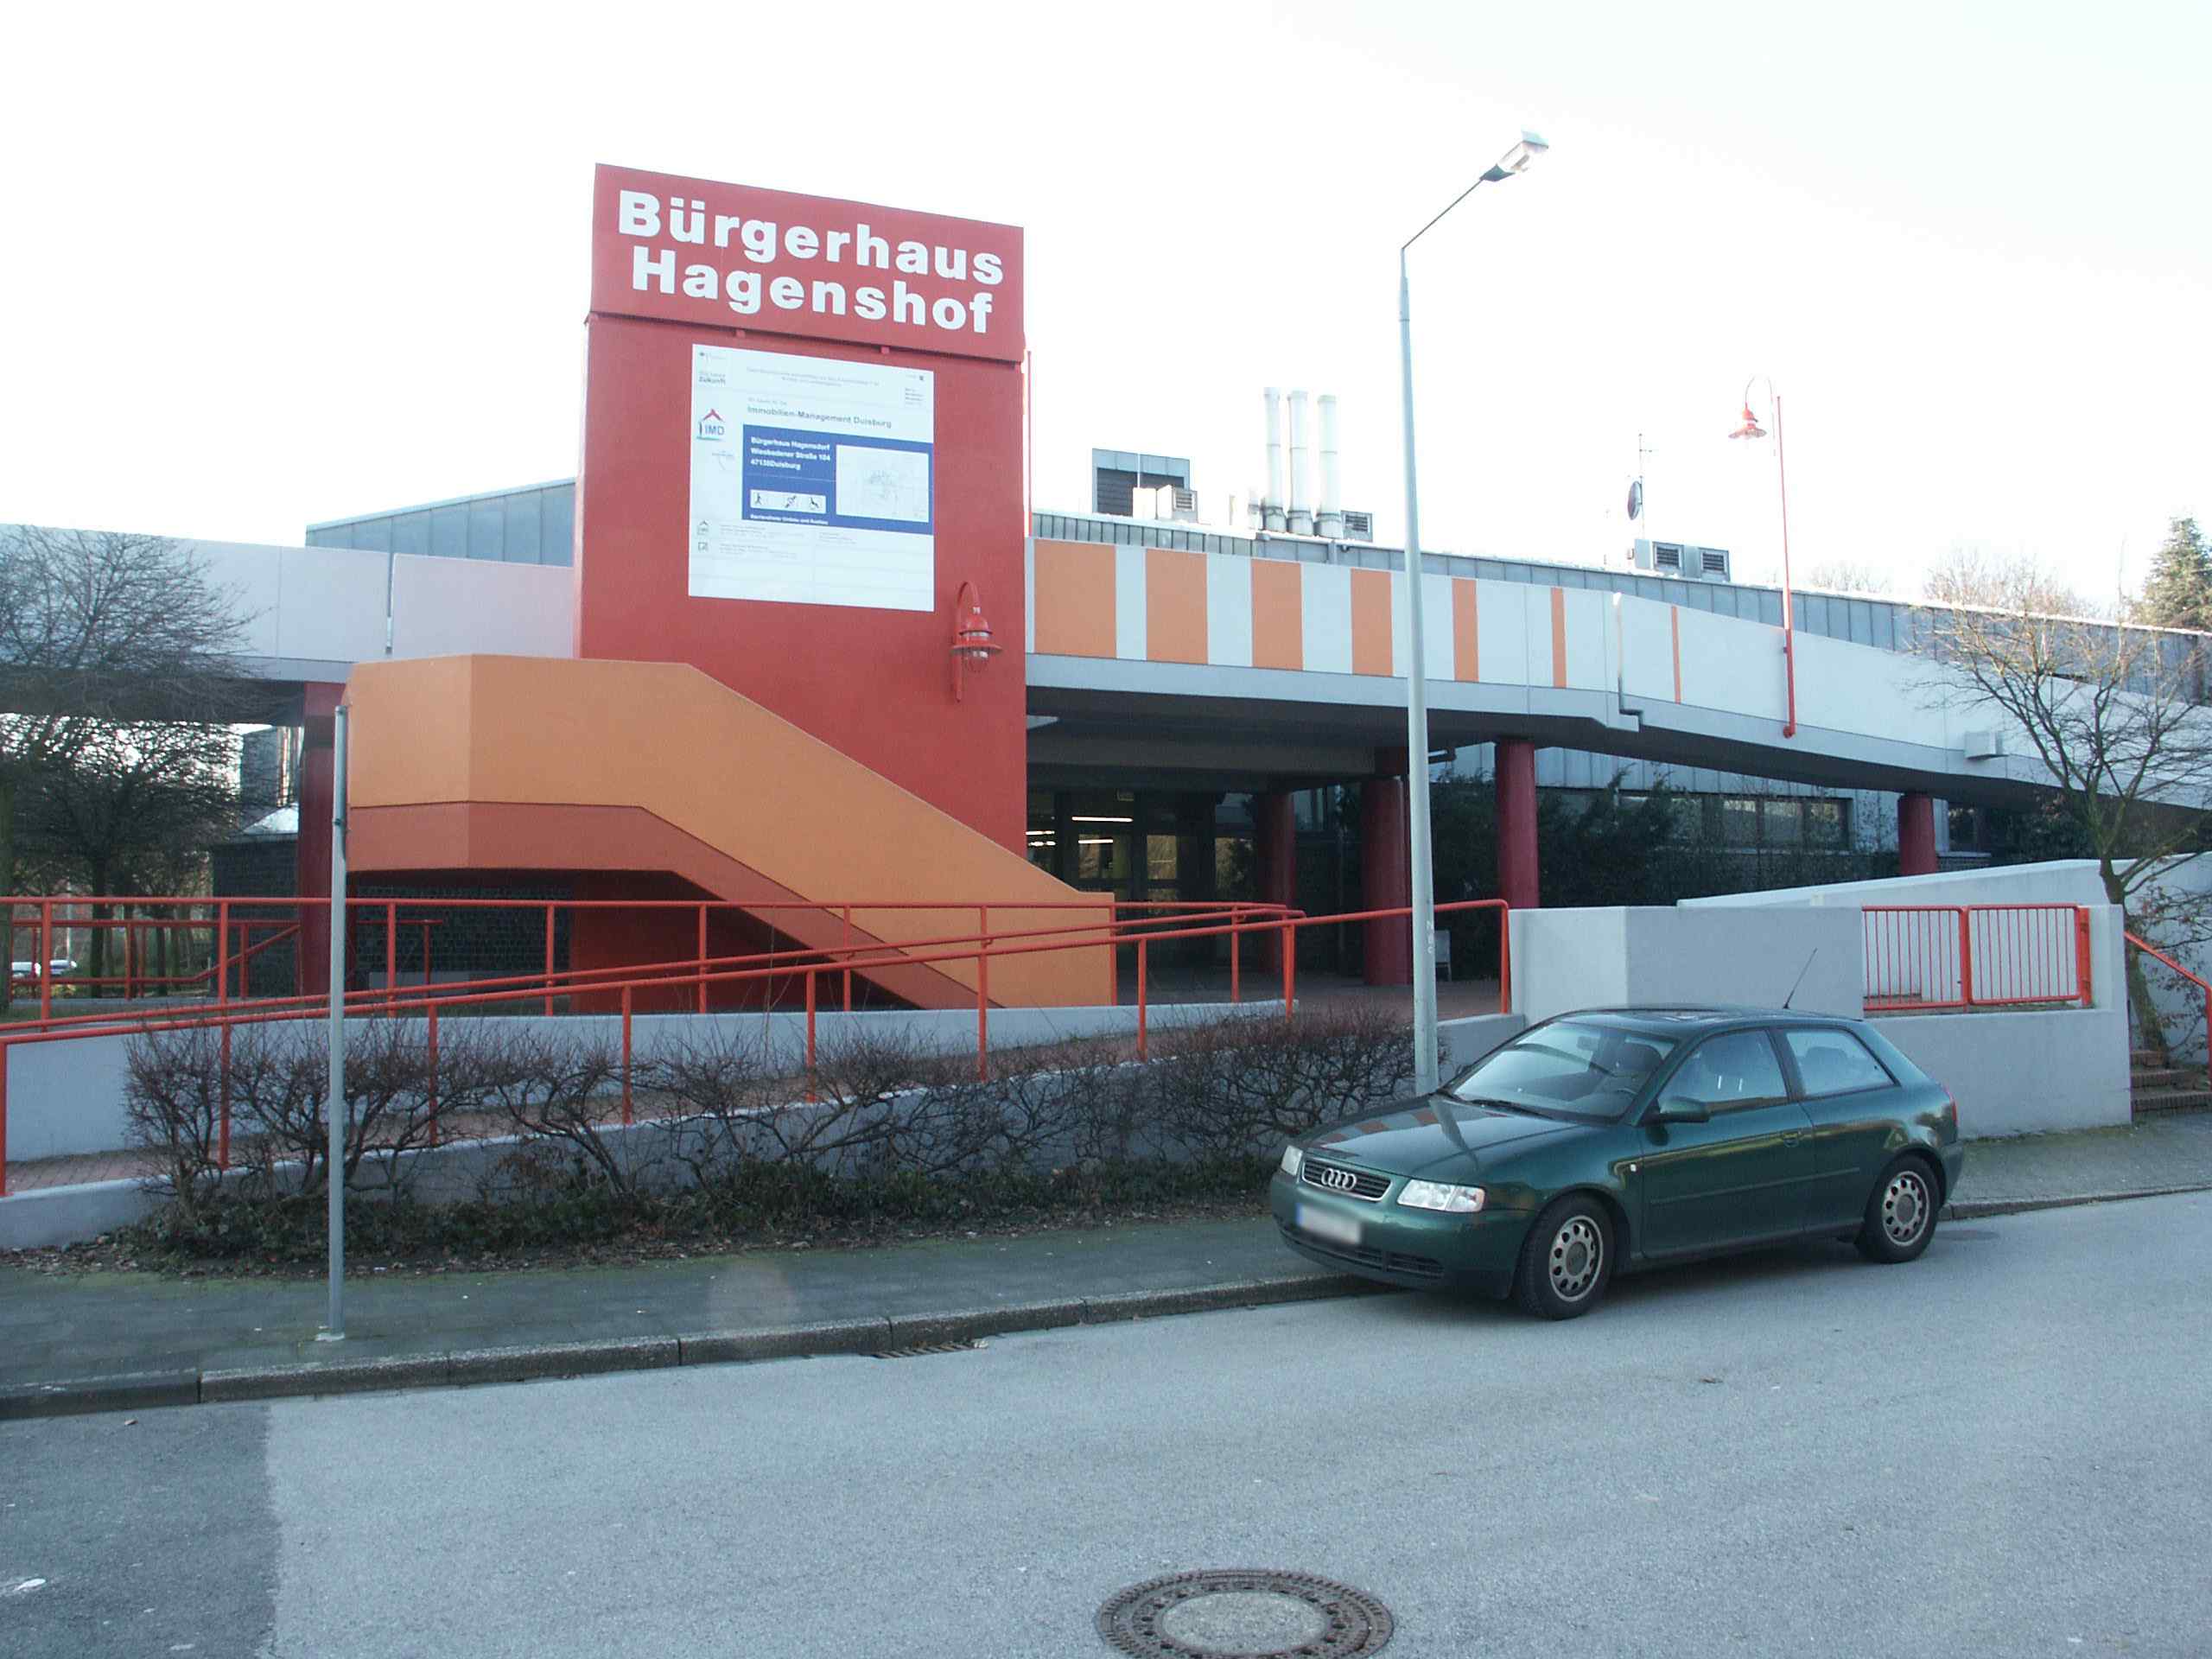 Bürgerhaus Hagenshof